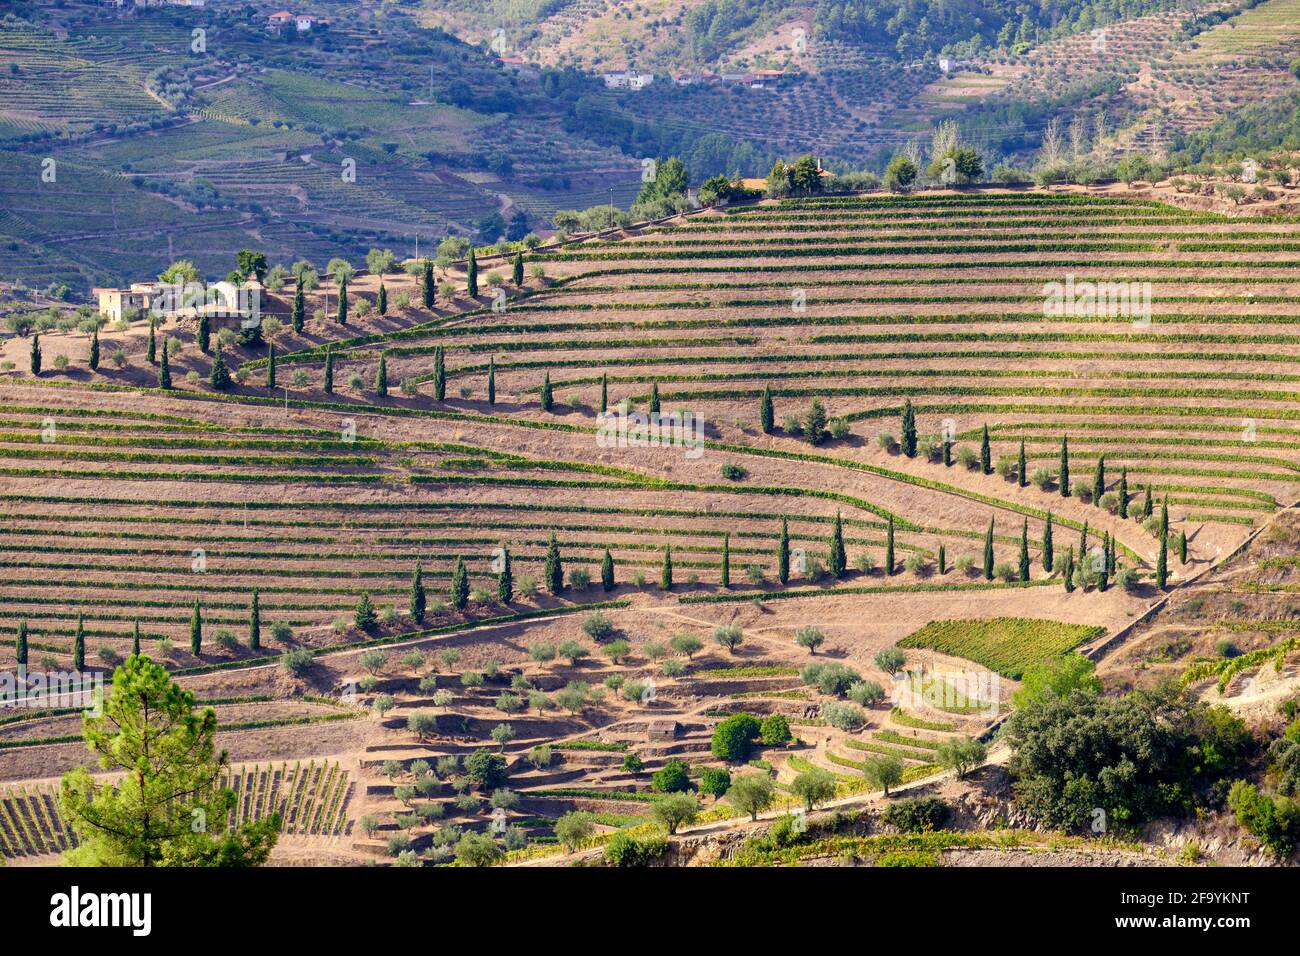 Vale de Mendiz, ein Tal, das sich entlang der Straße von Alijo nach Pinhao erstreckt, ist voll von Weinbergen, in denen der weltberühmte Portwein und der Douro-Wein hergestellt werden. Stockfoto